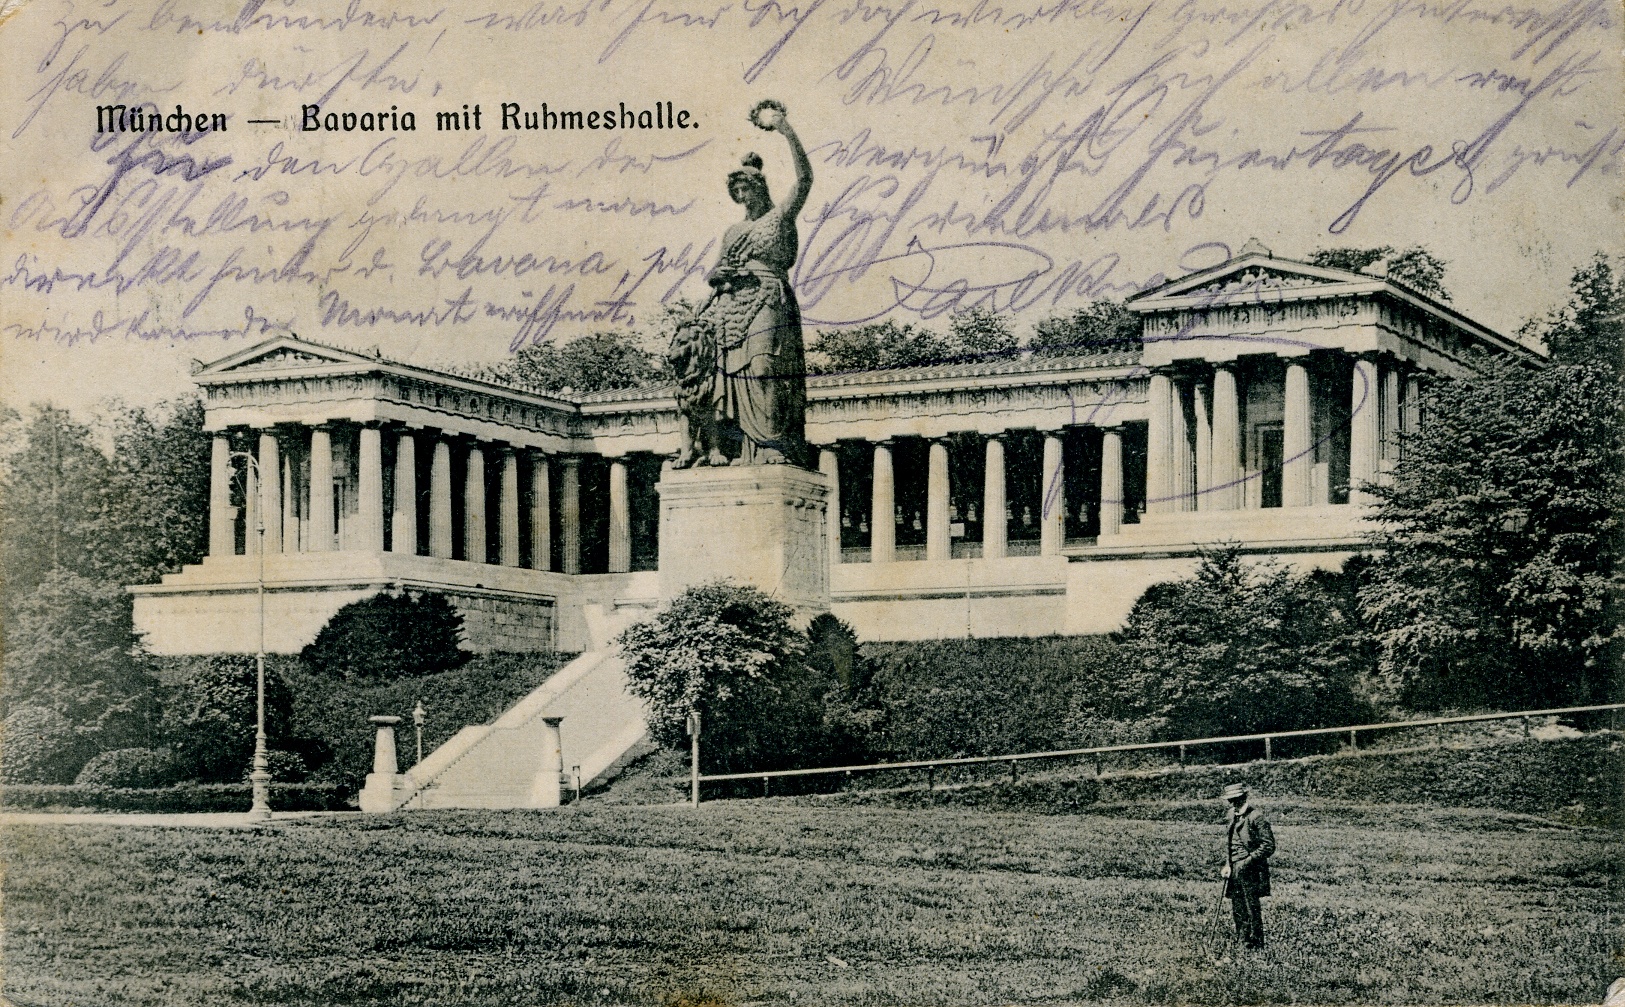 Postkarte München 1910 (Historisches Museum der Pfalz, Speyer CC BY)